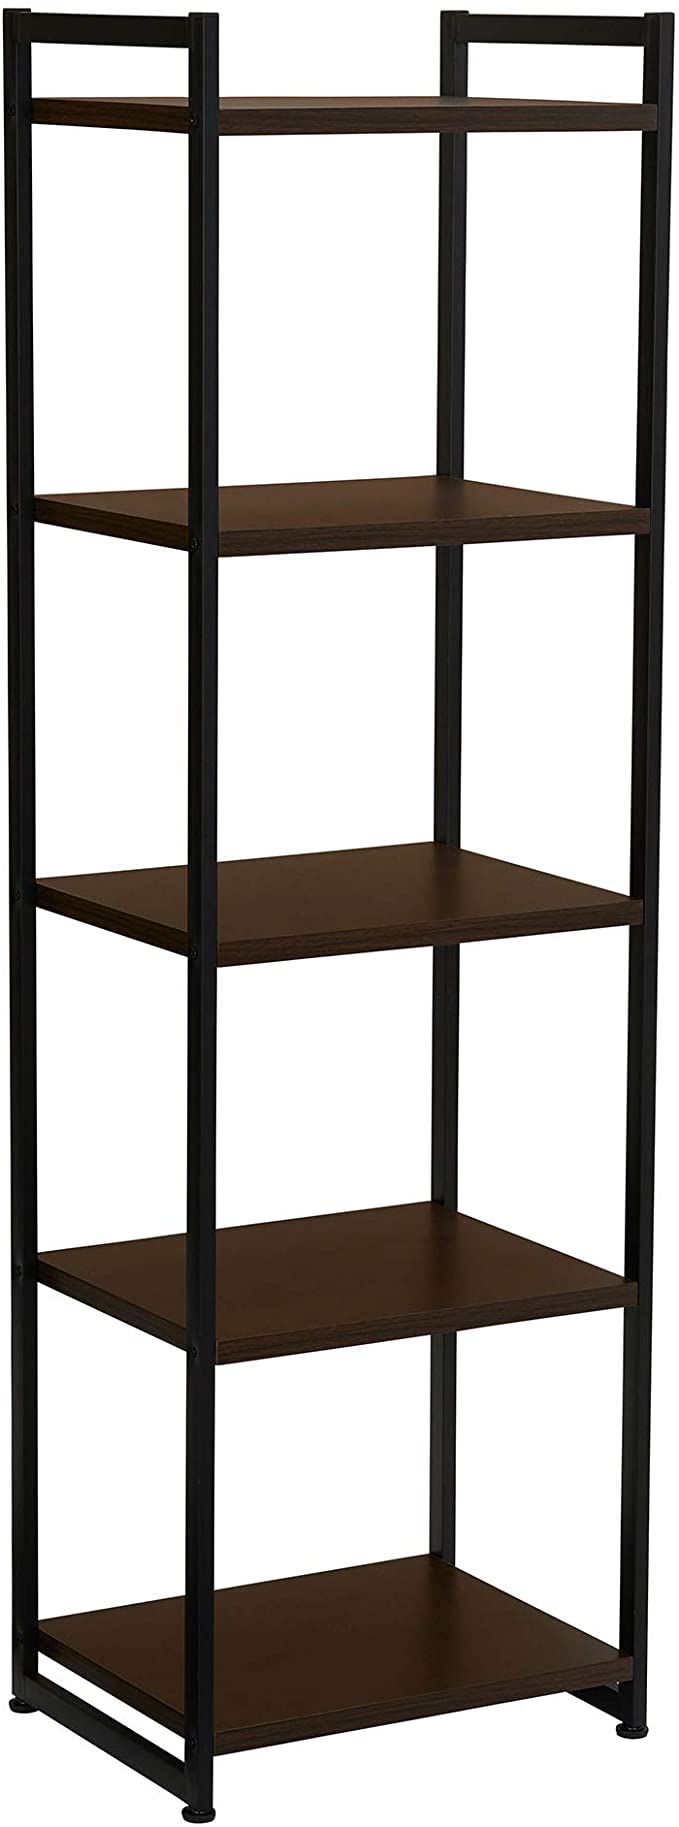 Household Essentials 5 Tier Storage Tower Shelf with Minimalist Metal Frame | 59" H x 17.75" W x 13.75" D | Dark Walnut, Brown